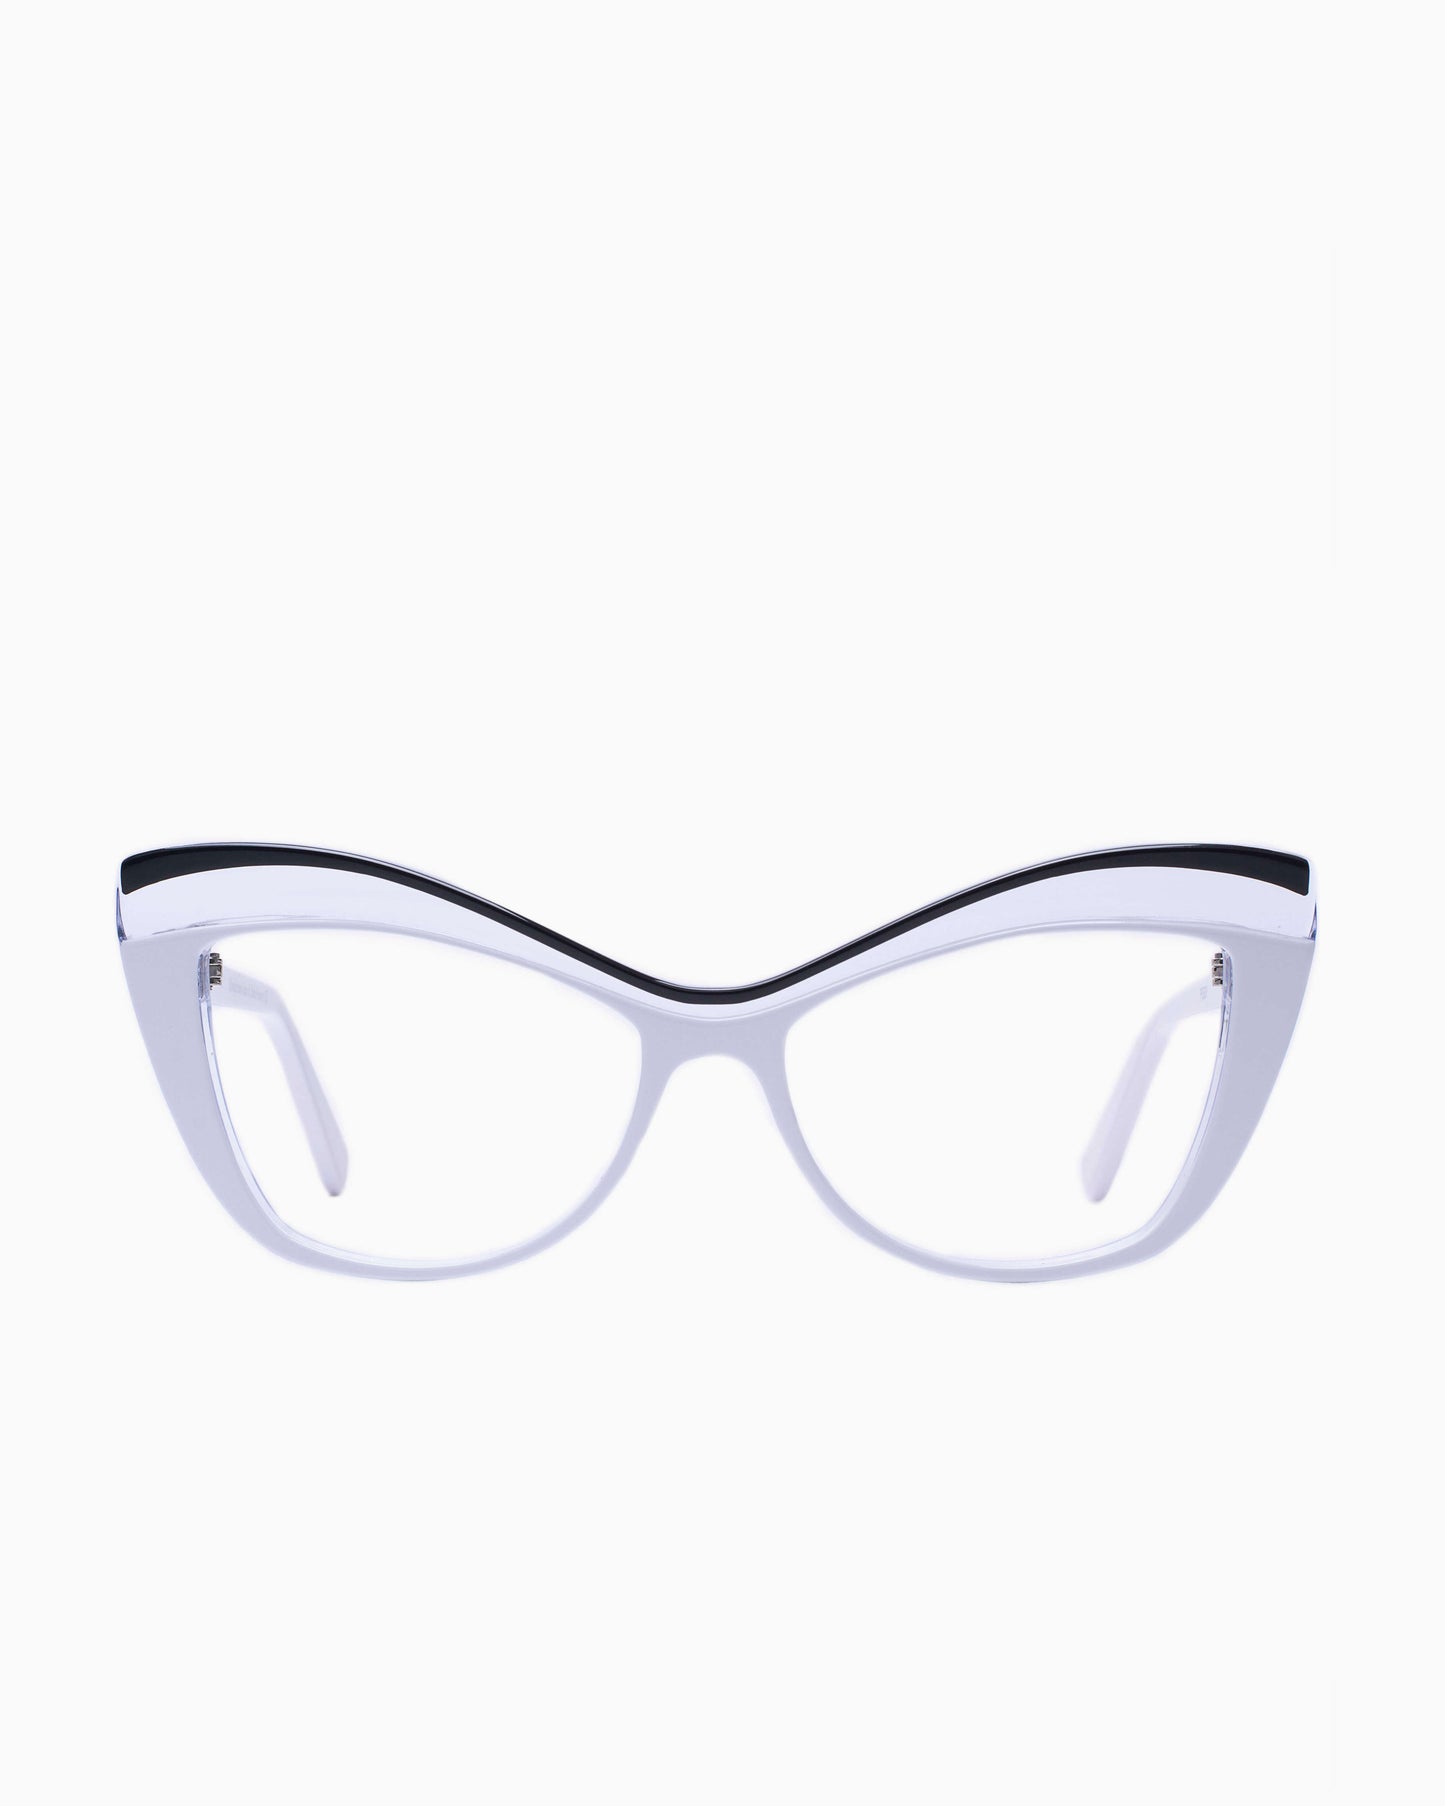 Traction - PEGGY - BlancNoir | Bar à lunettes